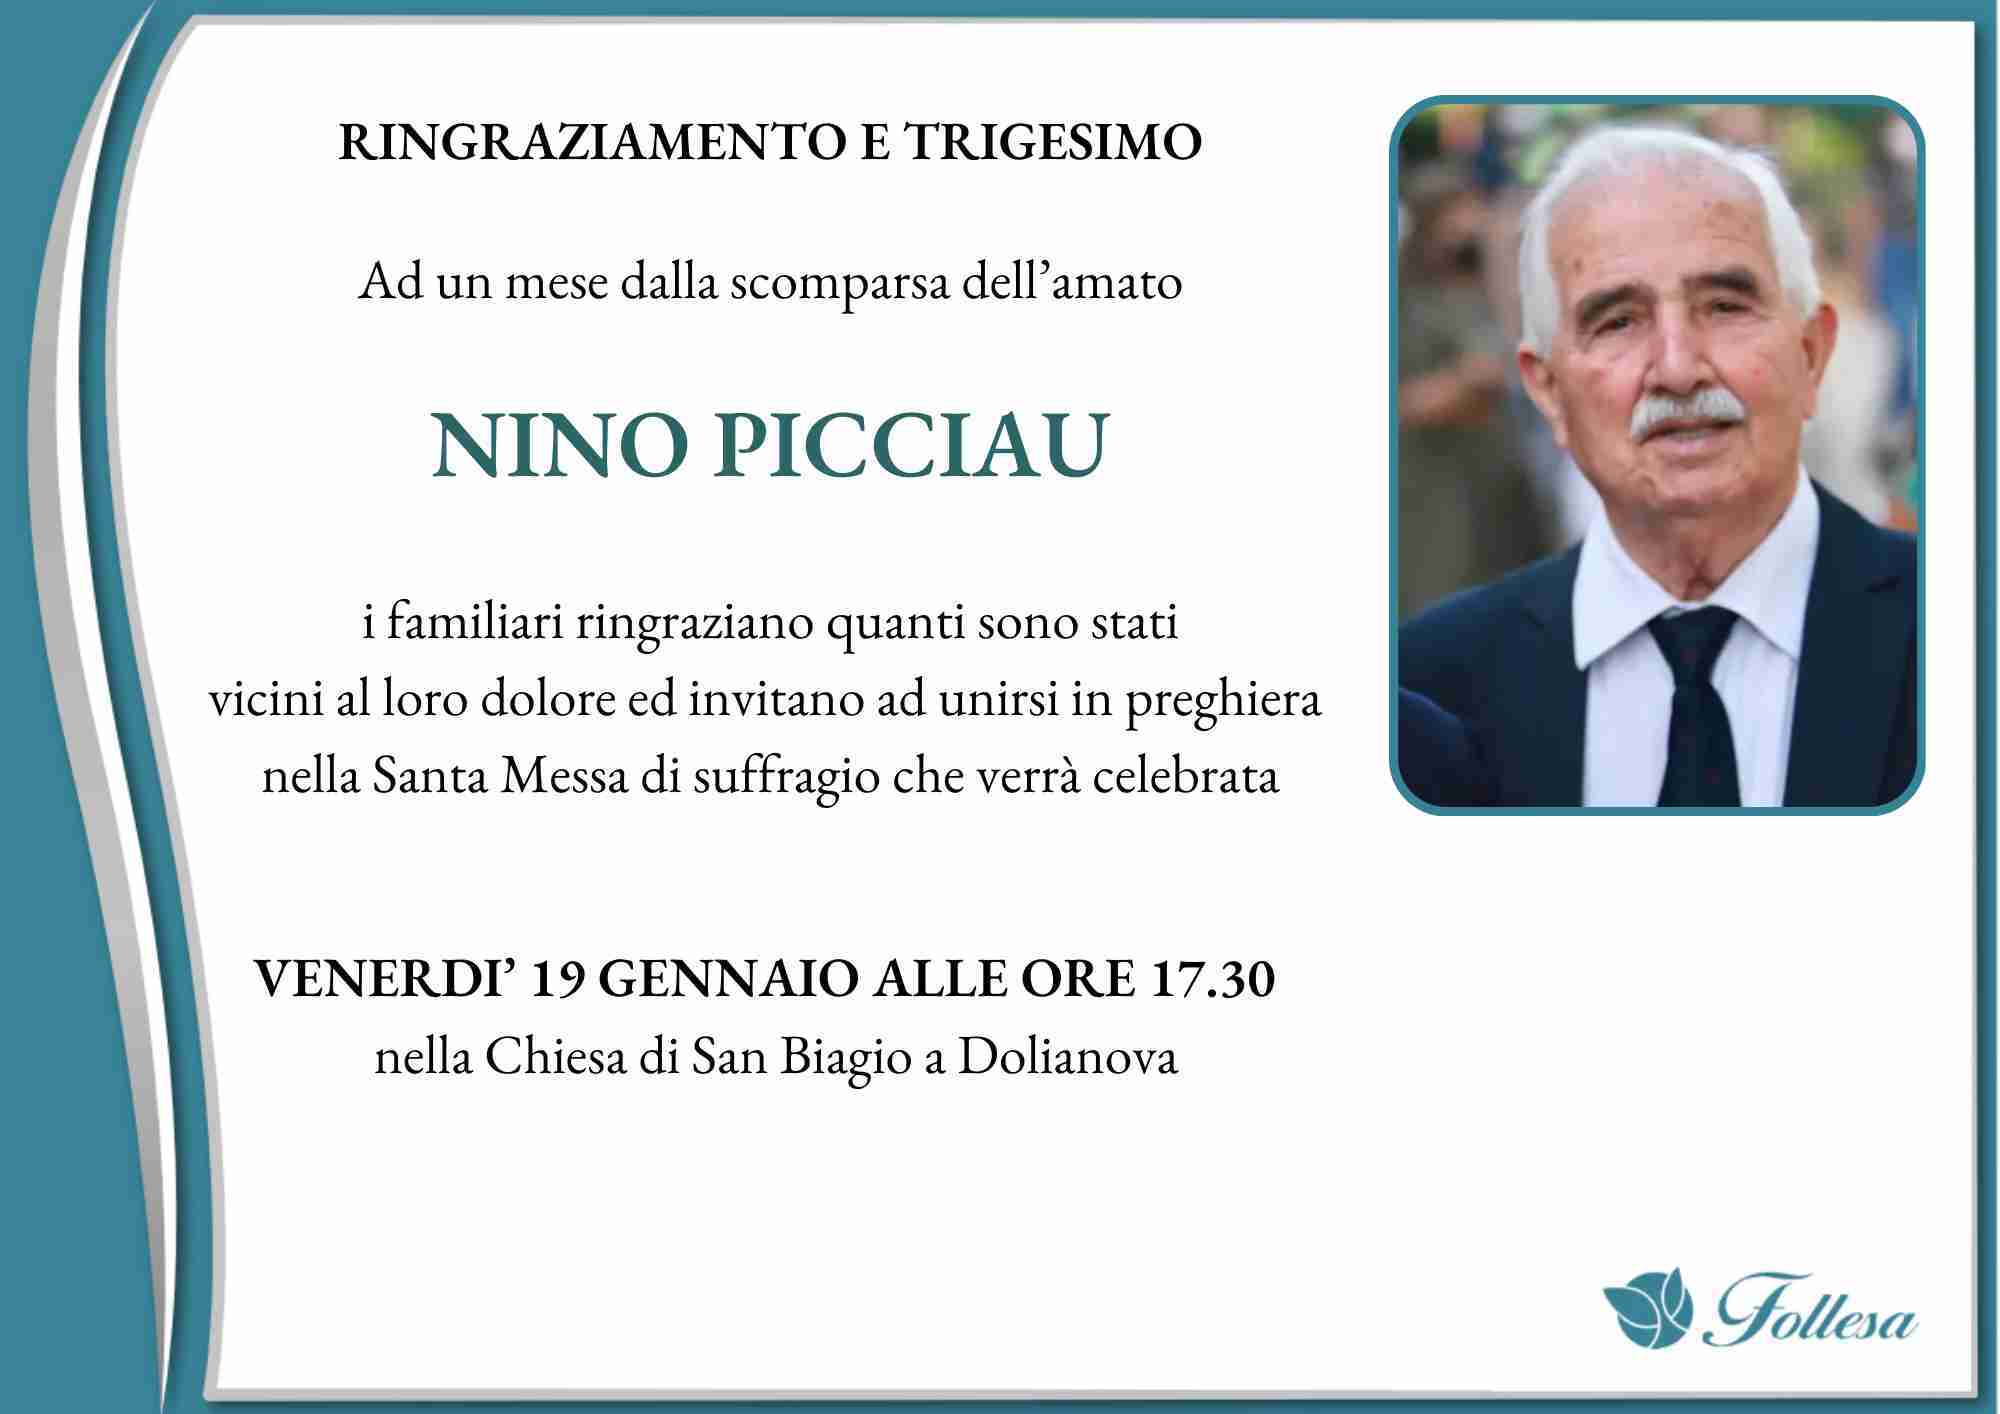 Nino Picciau